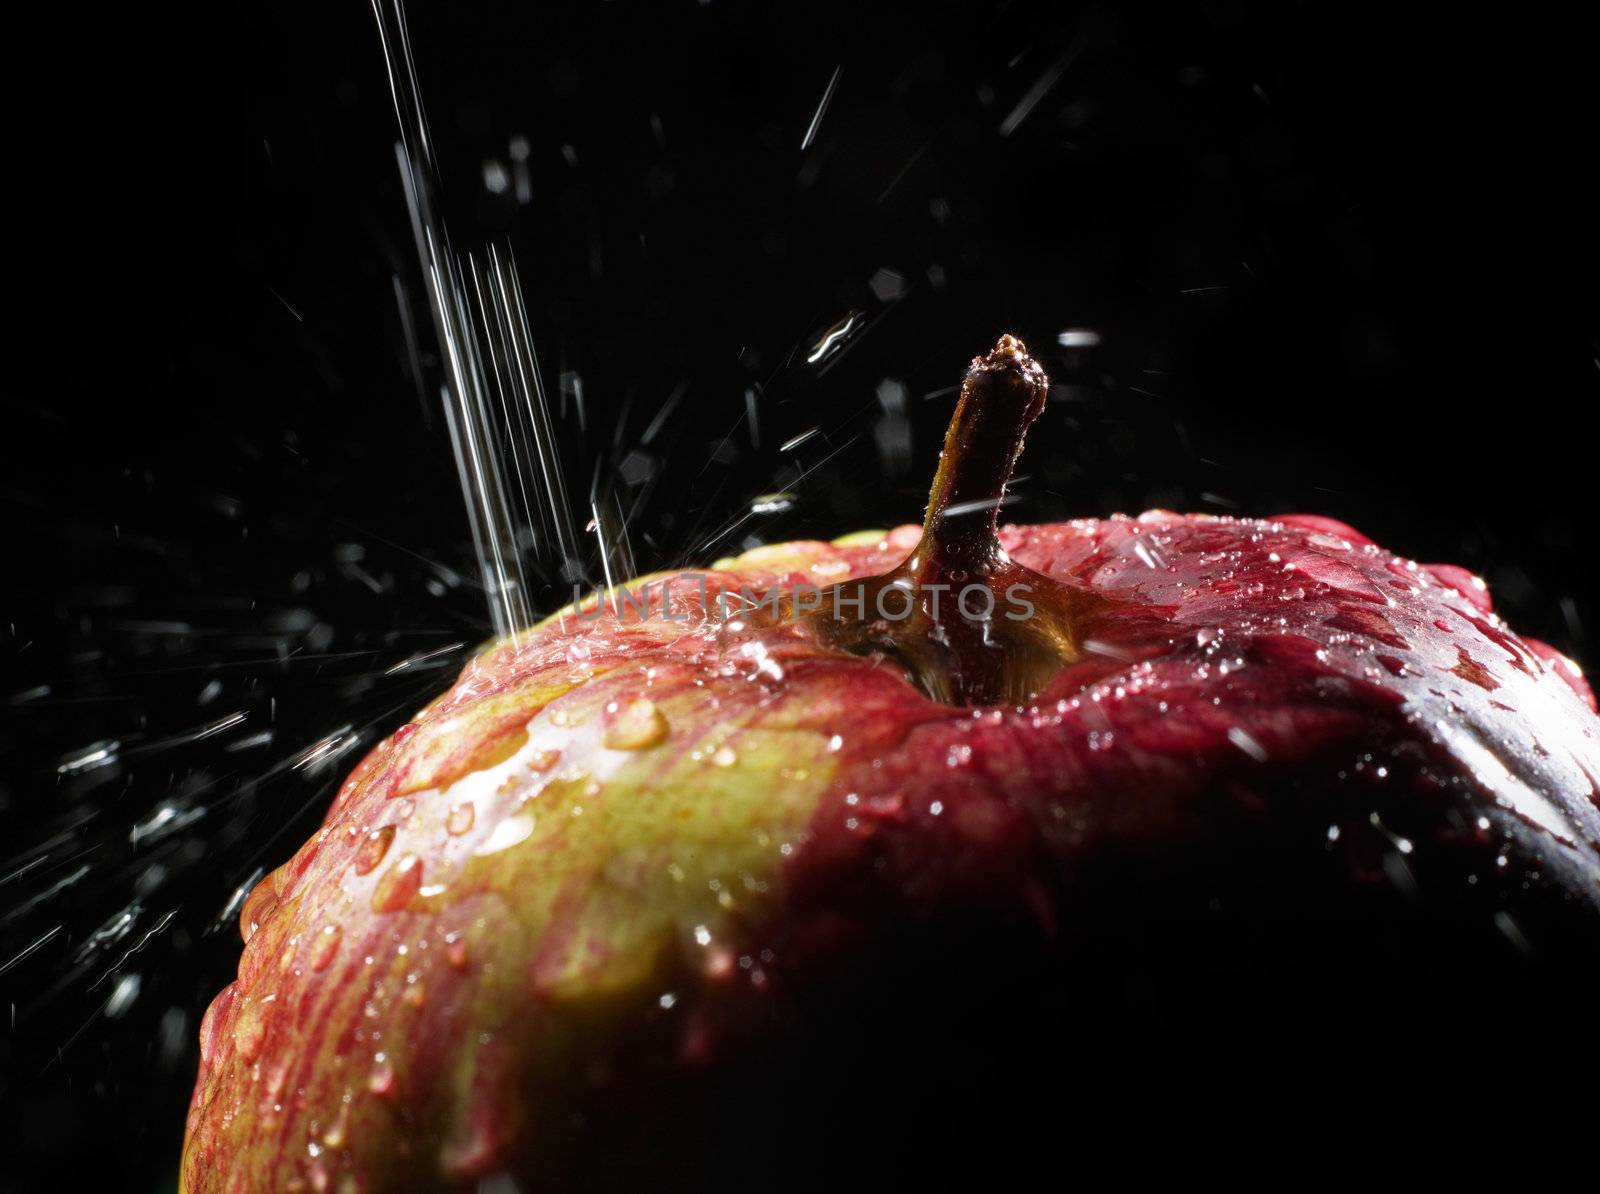 red apple under running water by oleg_zhukov